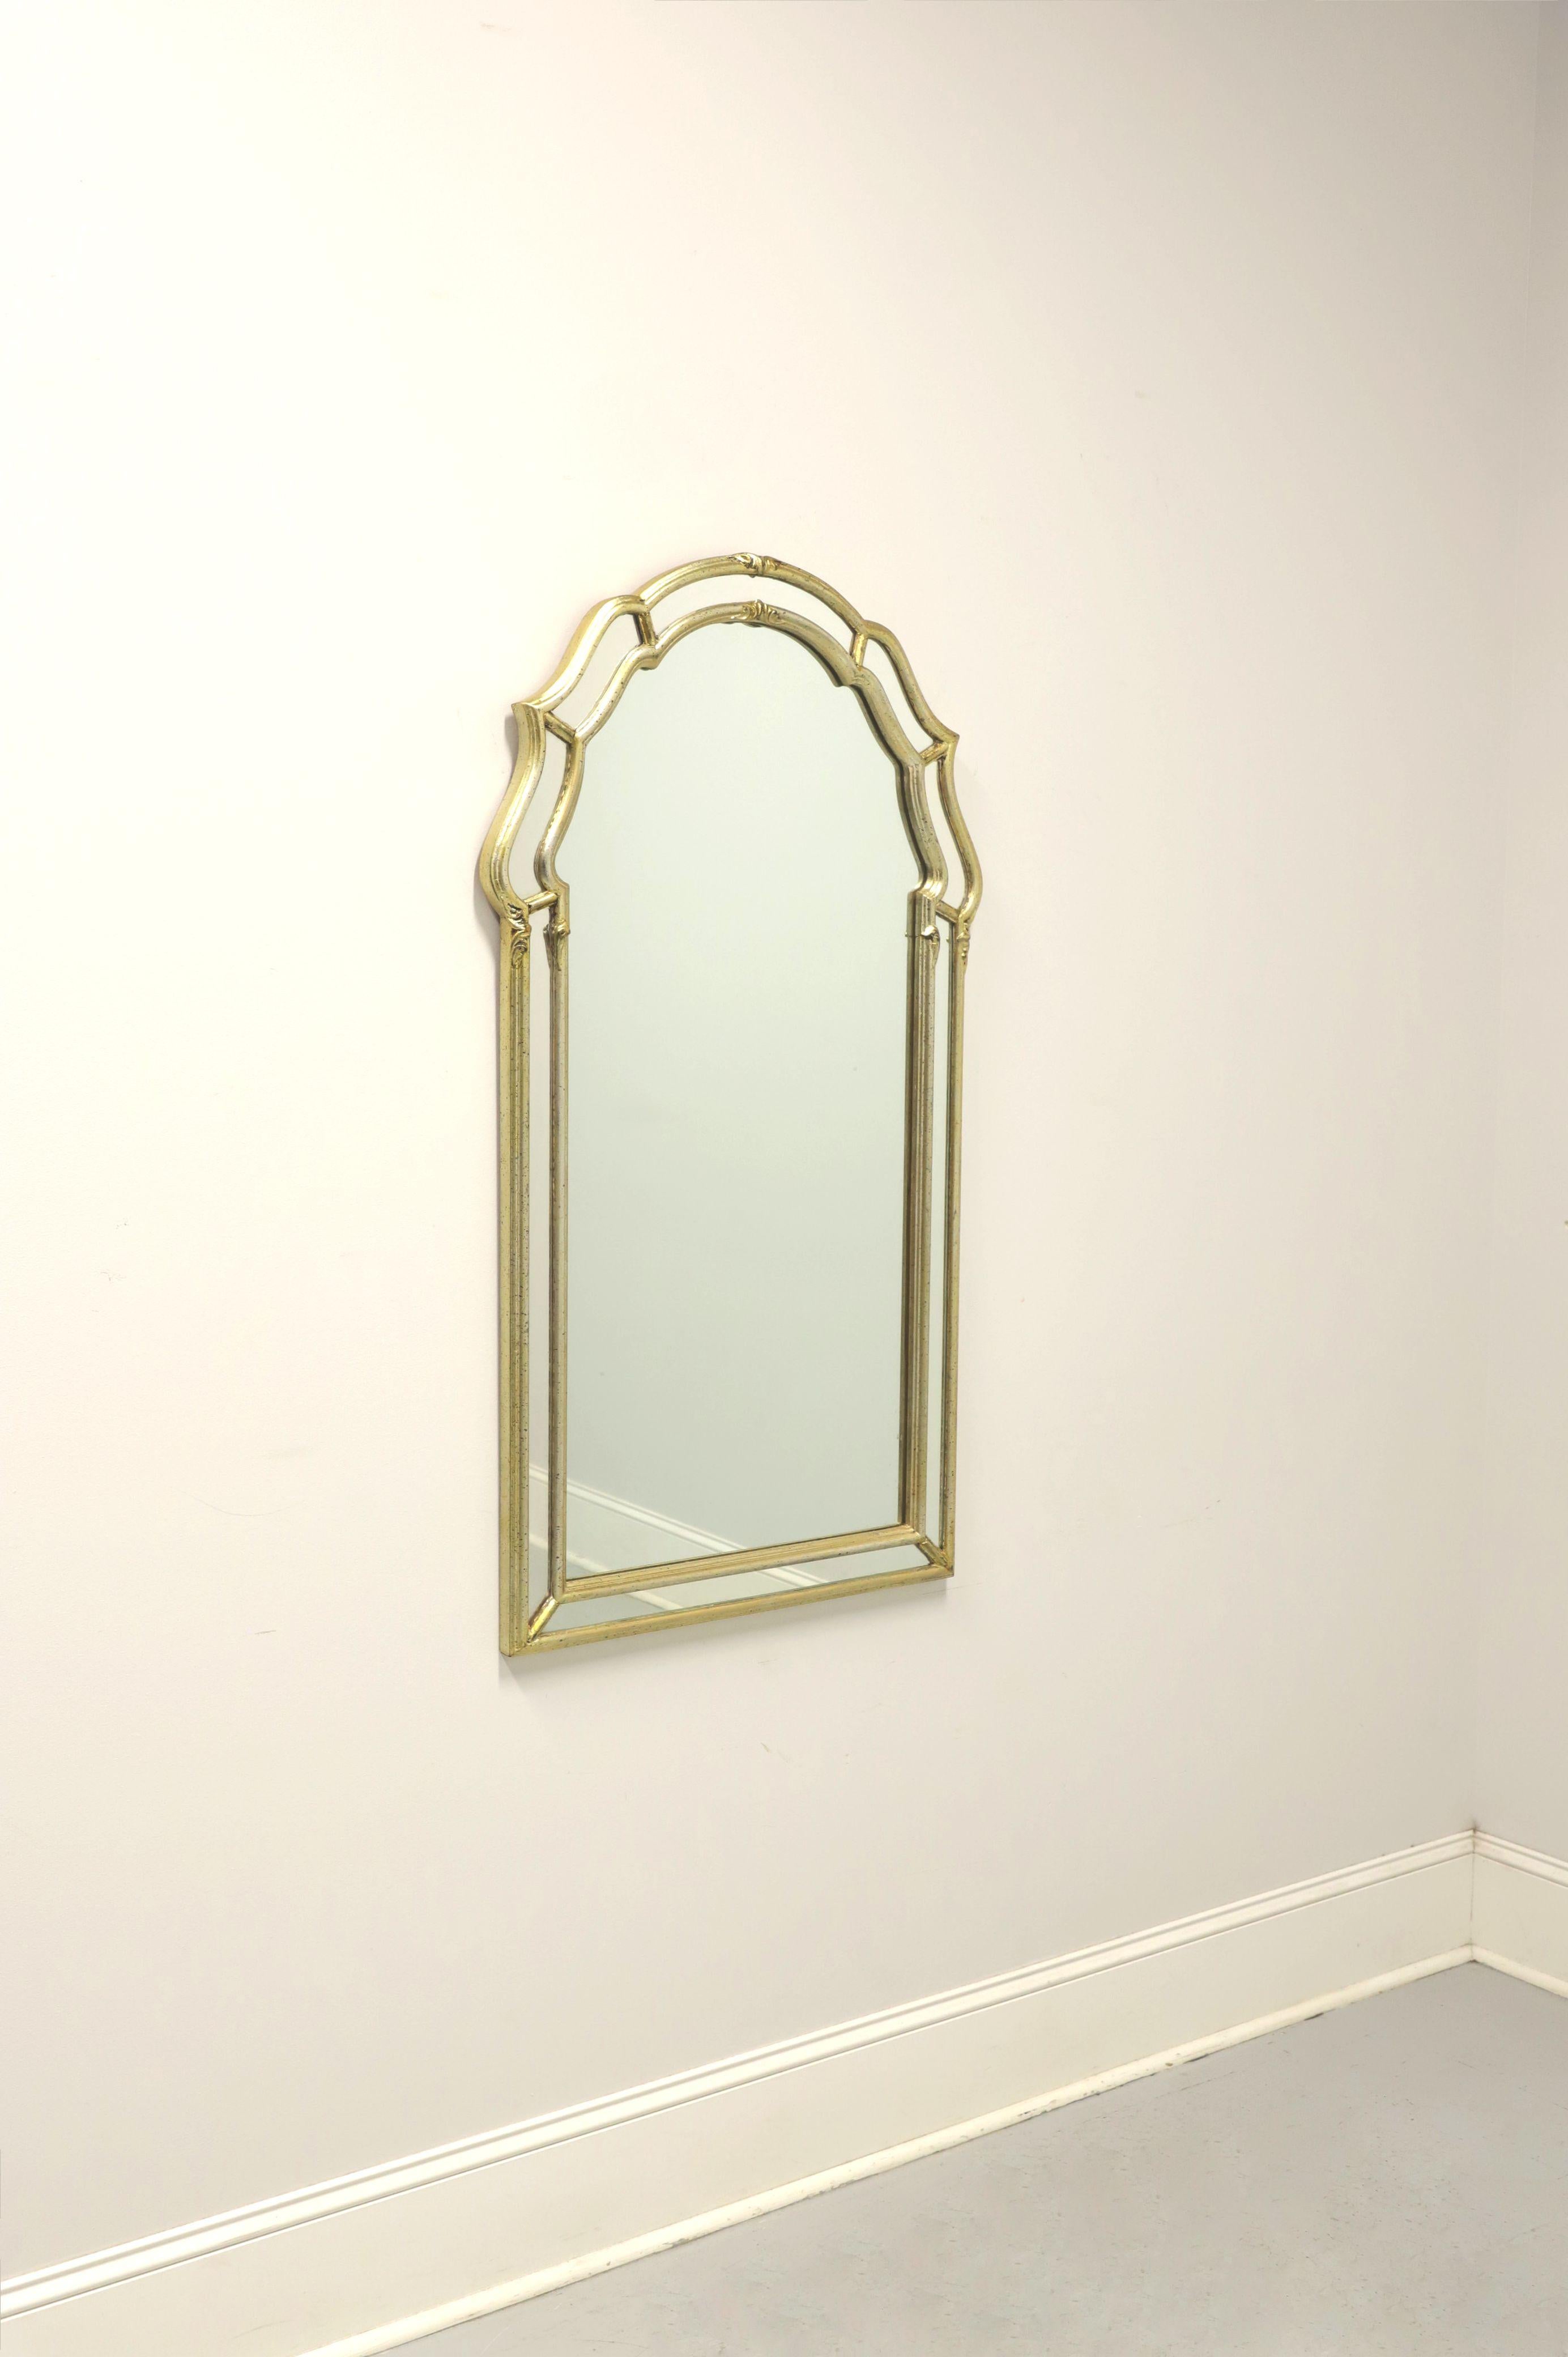 Ein italienischer Wandspiegel im Regency-Stil, ohne Markenzeichen. Verspiegeltes Glas in einem goldfarbenen Massivholzrahmen. Mit gewölbtem Oberteil und Spiegelstreifen an den Außenkanten. Hergestellt in Italien, Mitte des 20. Jahrhunderts. 

Maße: